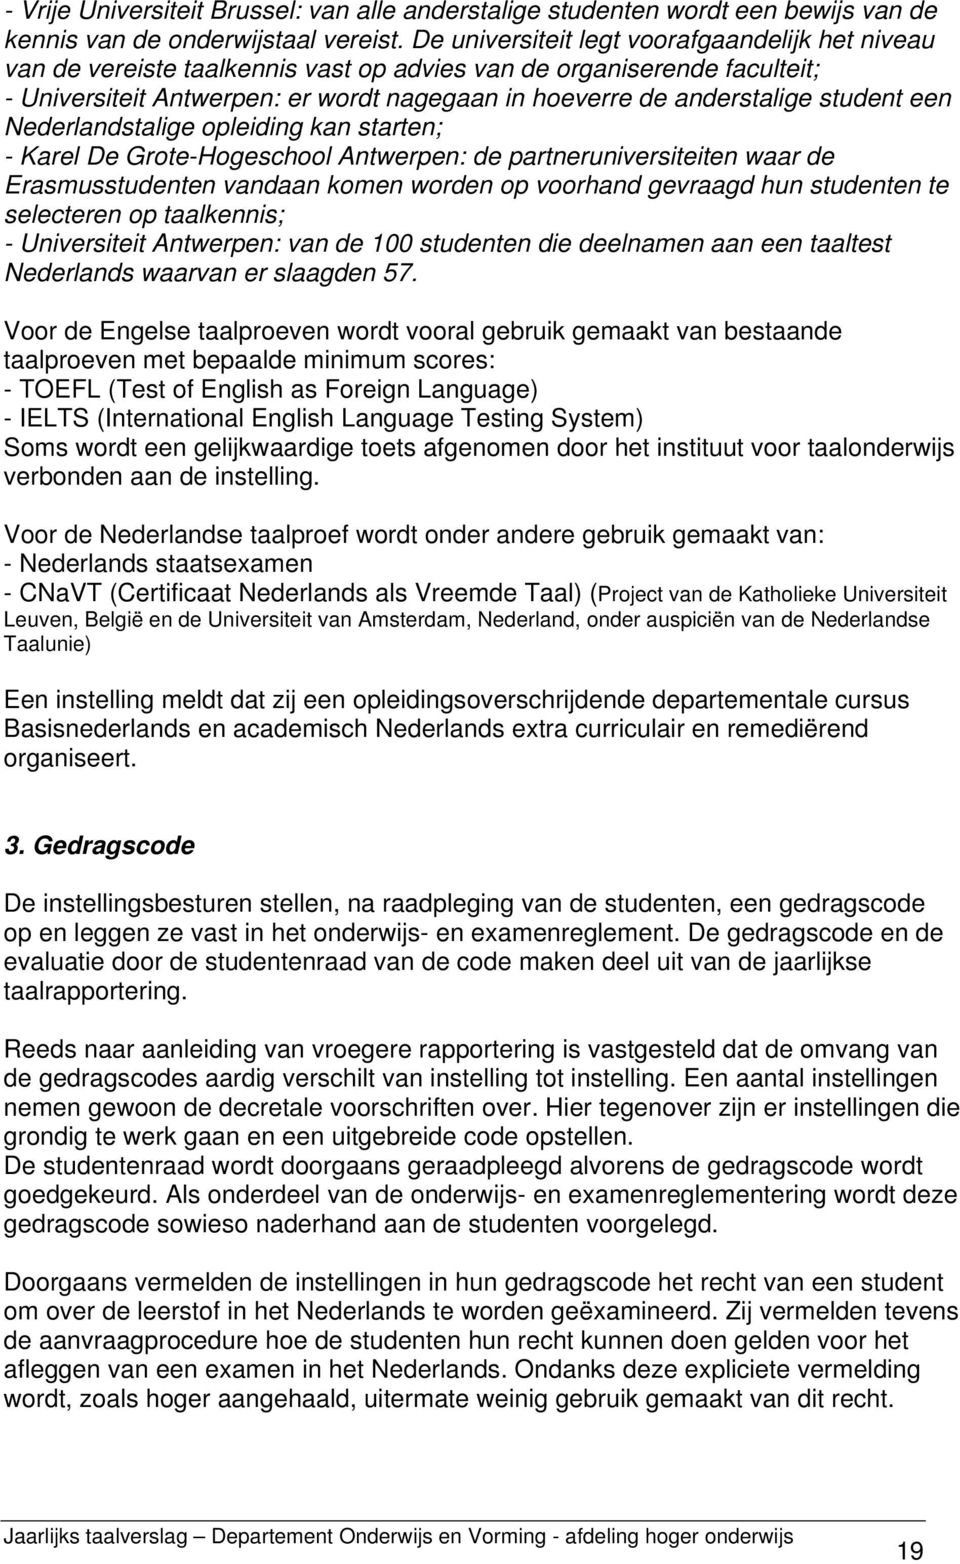 student een Nederlandstalige opleiding kan starten; - Karel De Grote-Hogeschool Antwerpen: de partneruniversiteiten waar de Erasmusstudenten vandaan komen worden op voorhand gevraagd hun studenten te